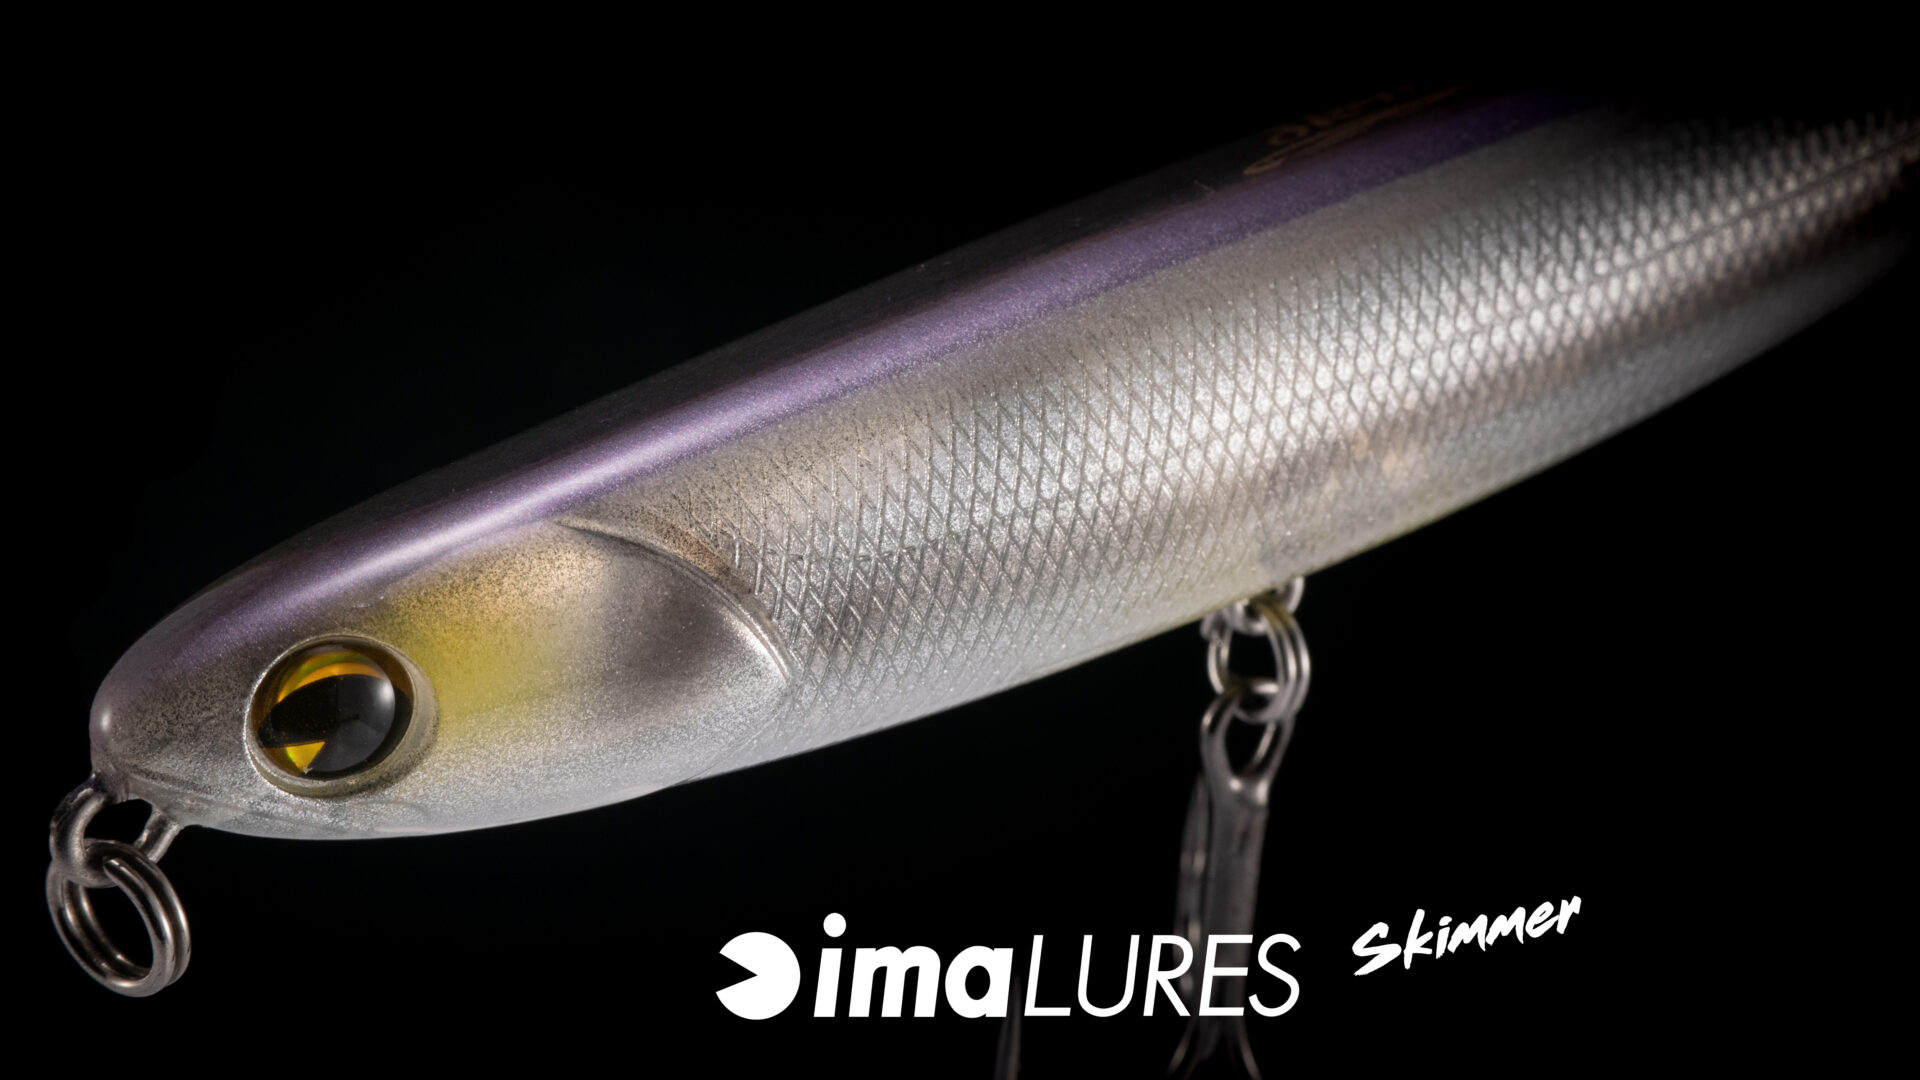 Ima Lures Skimmer – Way Of Fishing